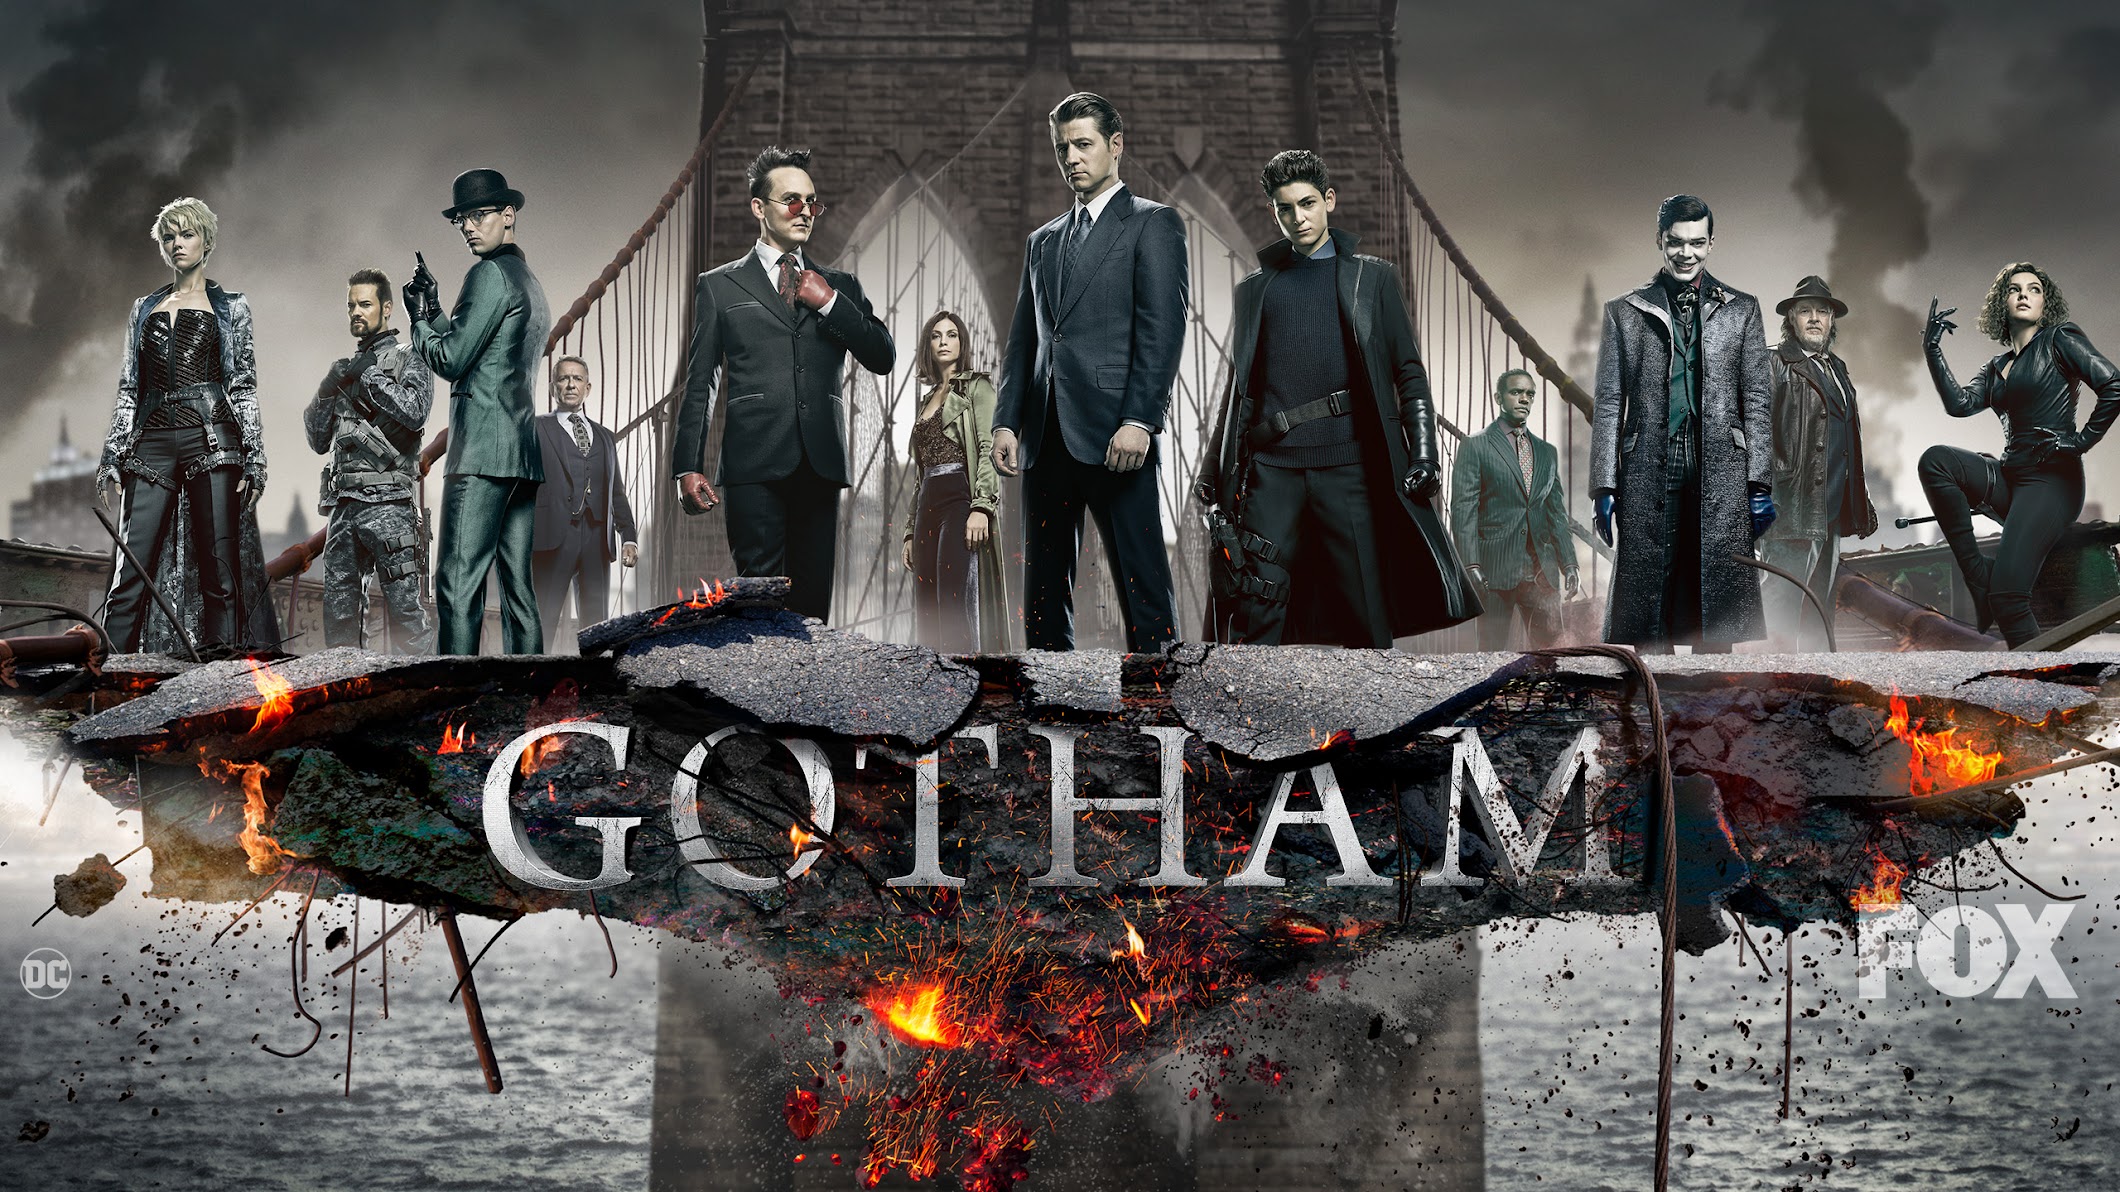 Gotham (unrelated to King\'s Avatar season 3): Khám phá bí mật của thành phố Gotham, nơi các siêu anh hùng và siêu ác nhân gặp gỡ. Chứng kiến Batman và các nhân vật kinh điển khác trên hành trình đấu tranh chống lại tội ác. Điều gì sẽ xảy ra với Gotham trong tương lai? Xem ngay hình ảnh liên quan!